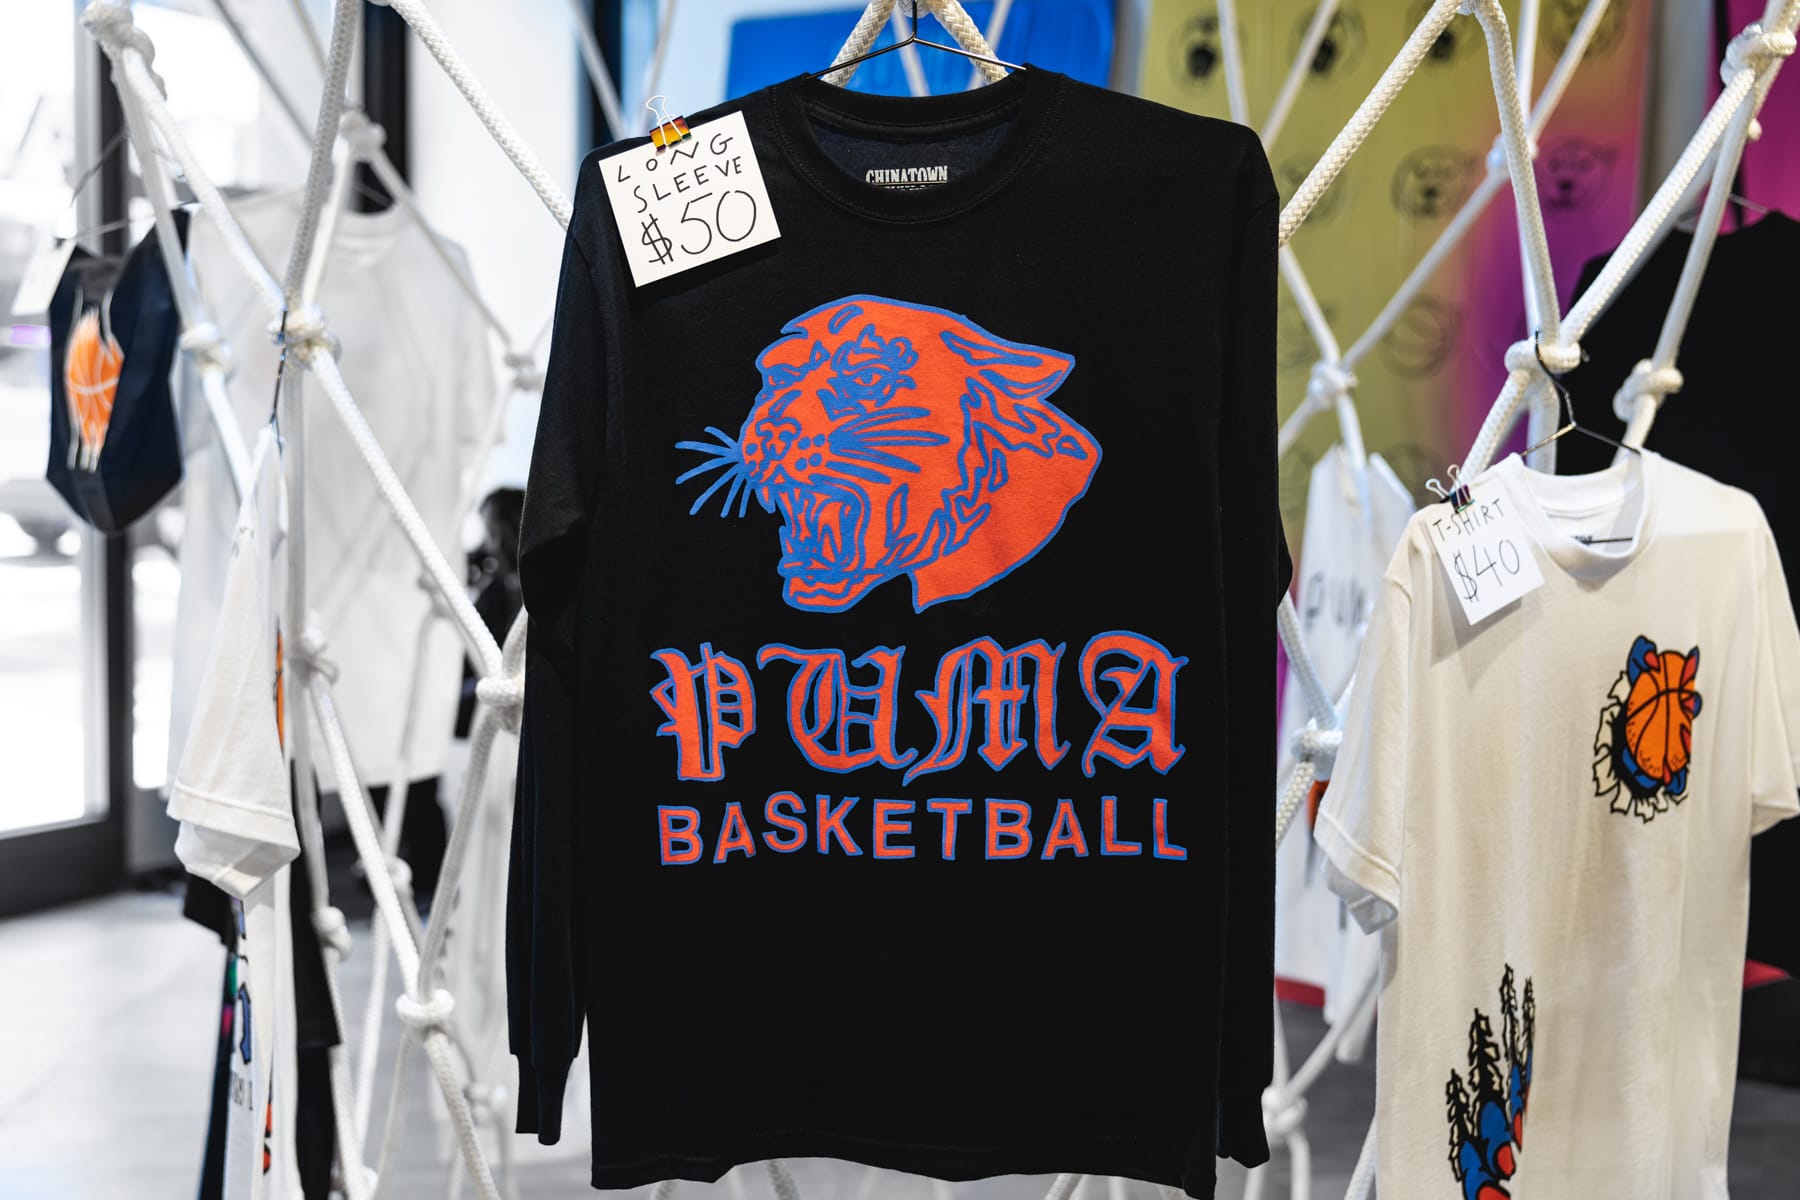 puma basketball apparel